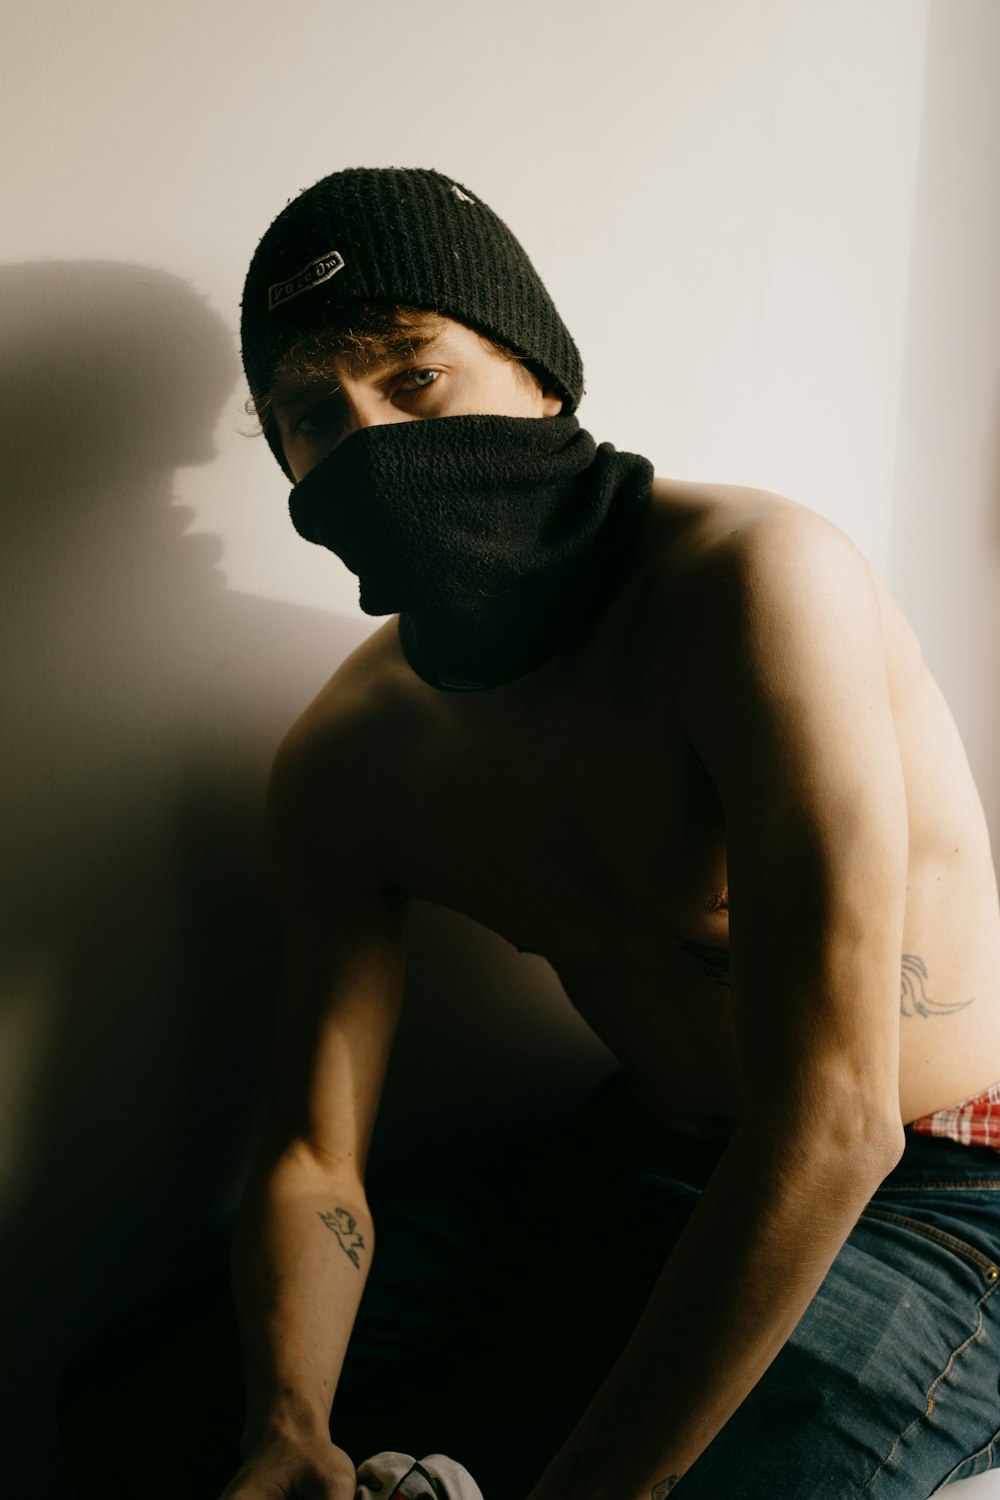 topless man wearing black knit cap